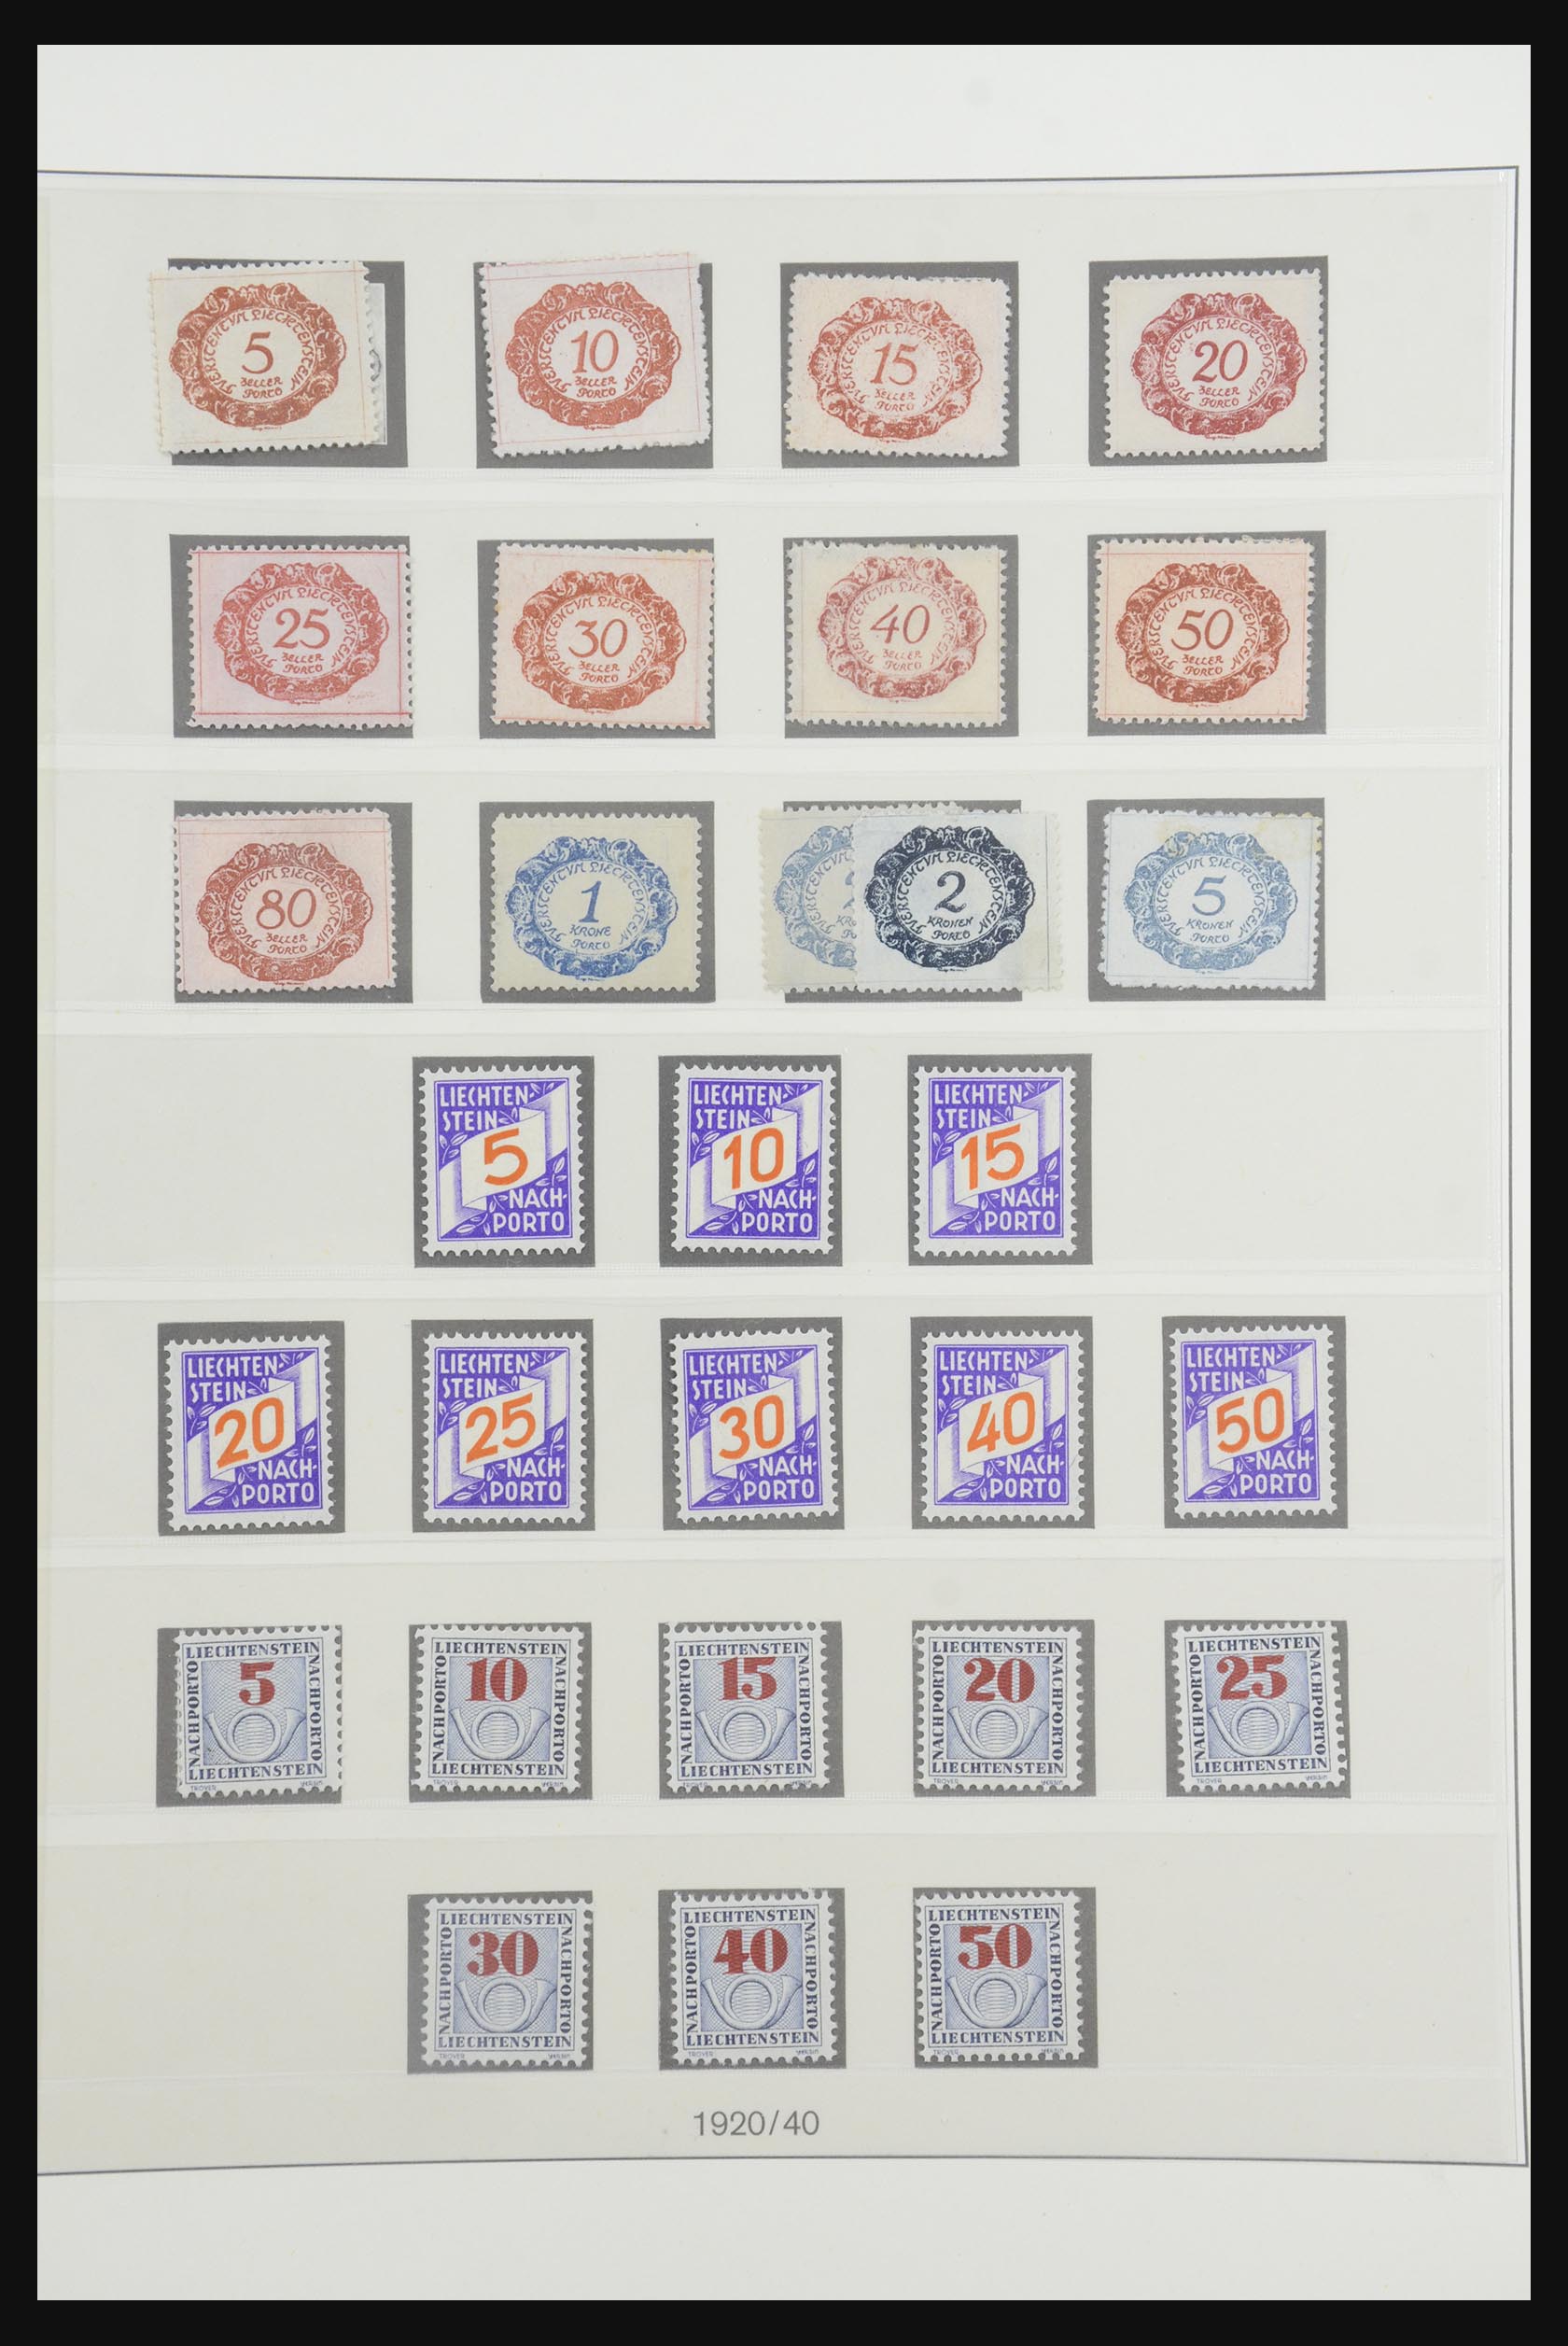 31805 075 - 31805 Liechtenstein 1912-2001.